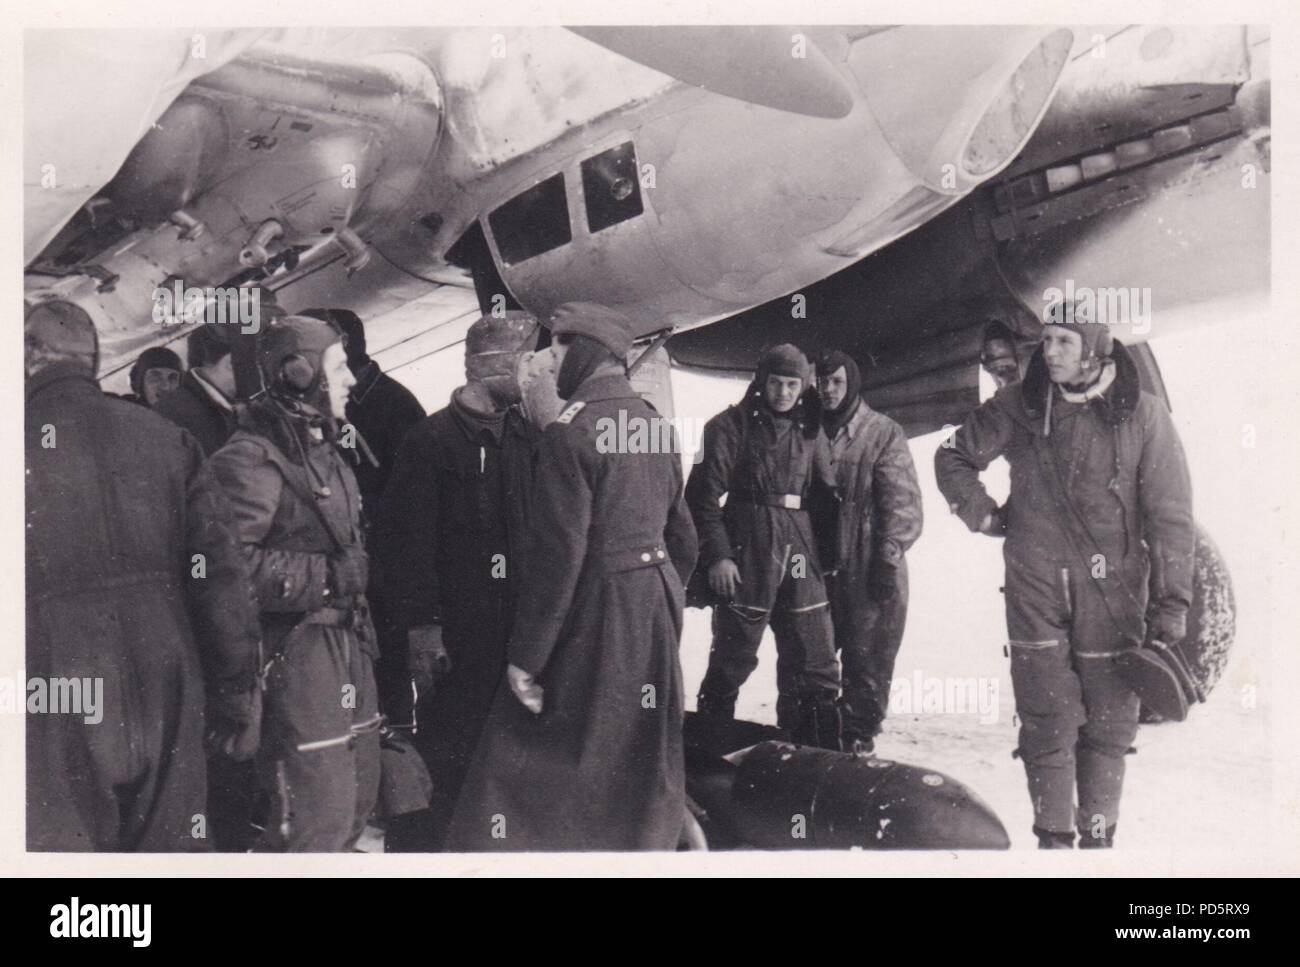 Droit de l'album photo de l'Oberleutnant Oscar Müller de la Kampfgeschwader 1 : l'Oberleutnant Johannes Brandenburg (à droite) et son équipage avec leurs Junkers Ju 88 suite à une autre mission de l'Aérodrome de Dno en Russie au début de 1942. Le Brandebourg est Staffelkapitän du 4./KG 1 et a été tué avec son équipage dans une explosion en plein vol de l'avion le 28 février 1942 après son avion a été touché par une bombe publié par un autre avion volant au-dessus. Le Brandebourg a été décerné la Croix de Chevalier de la Croix de Fer le 18 septembre 1940, alors qu'il servait avec Stukageschwader 2 dans l'Ouest. Banque D'Images